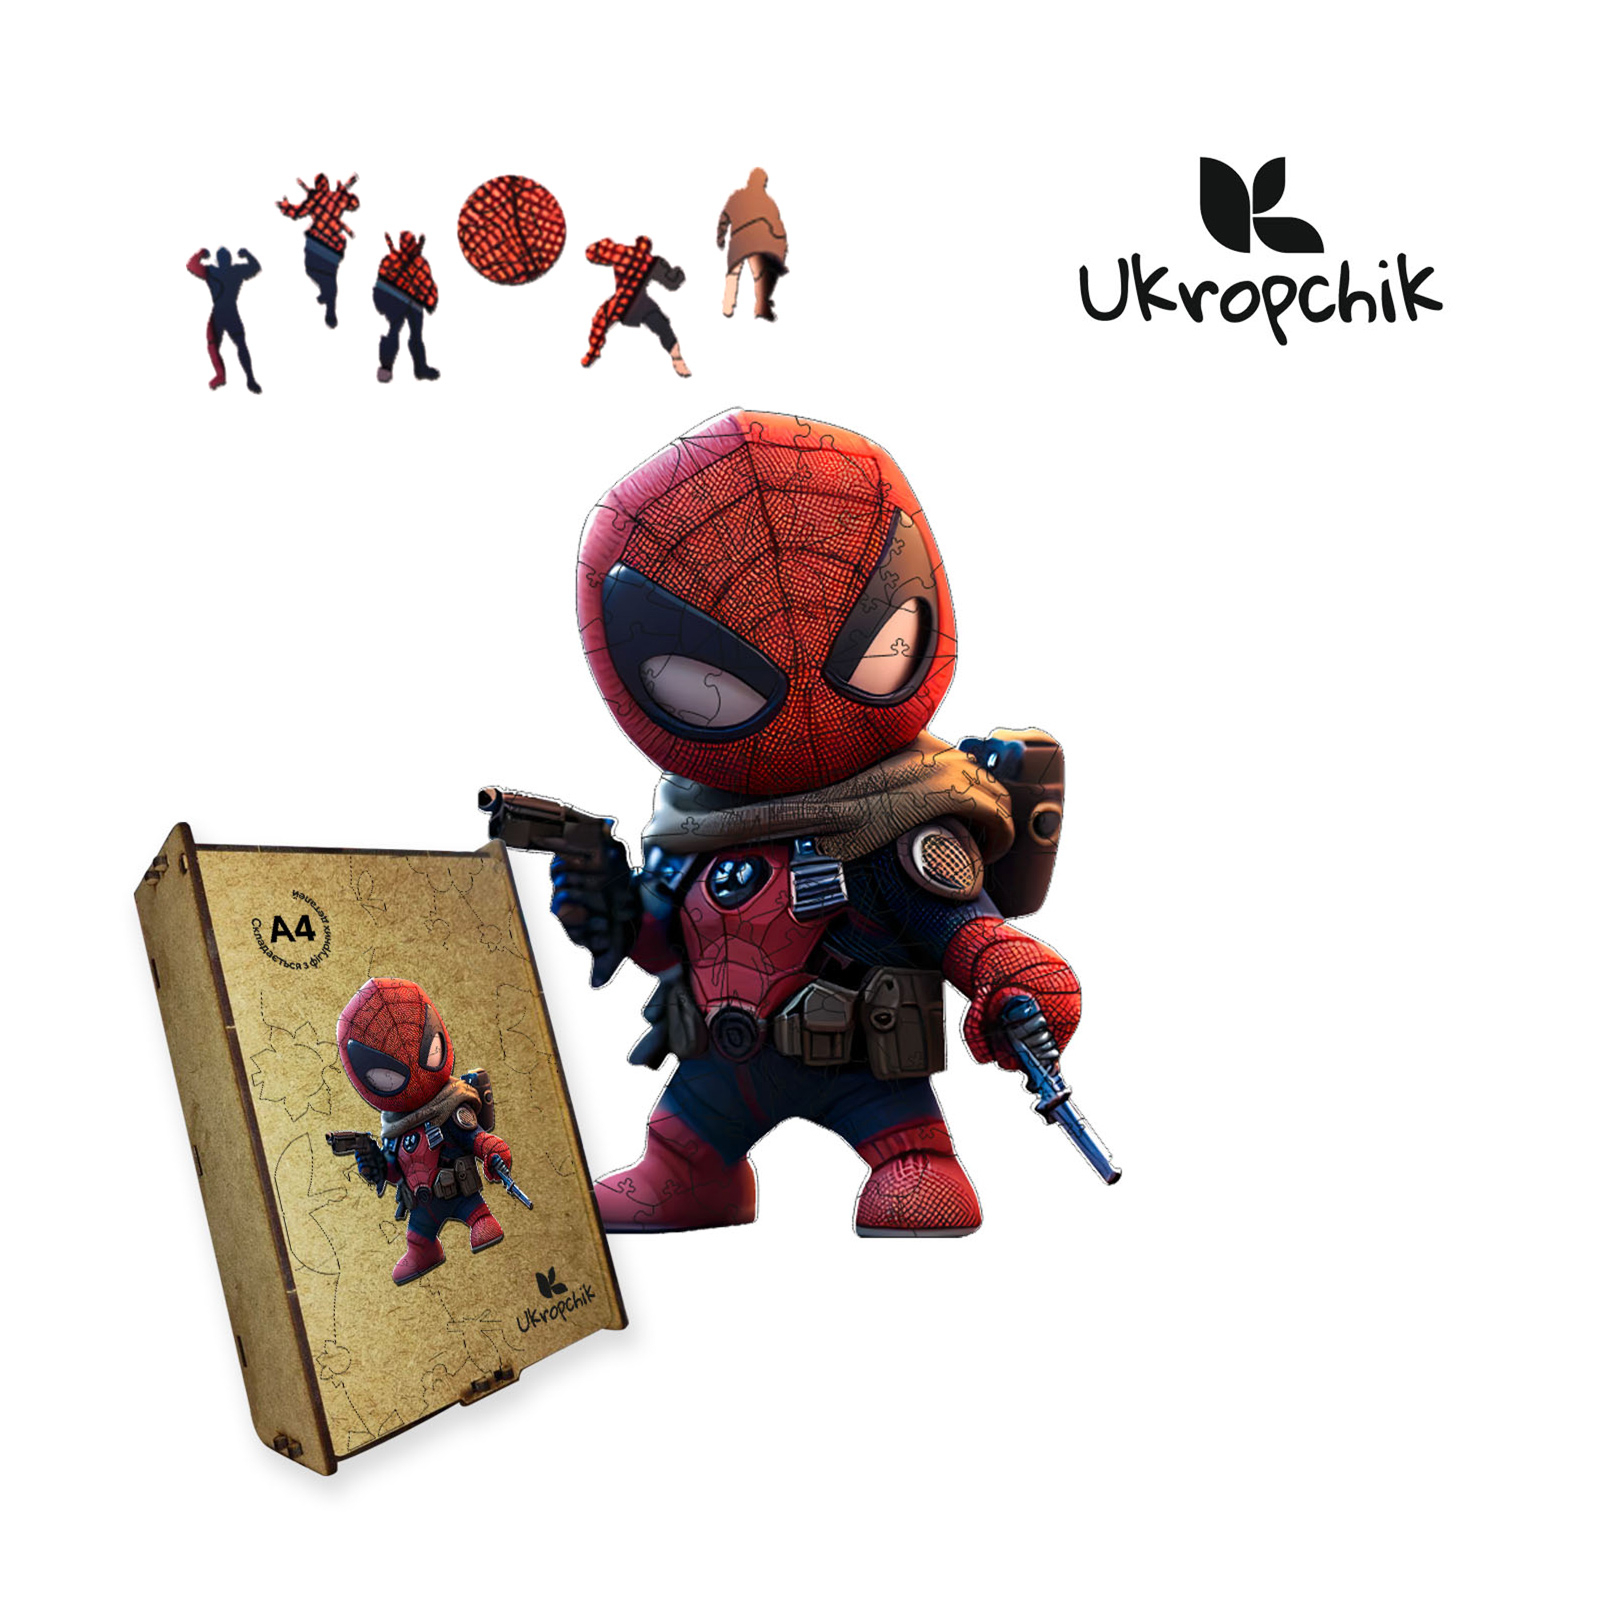 Пазл Ukropchik дерев'яний Супергерой Дедпул size - L в коробці з набором-рамкою (Deadpool Superhero A3)